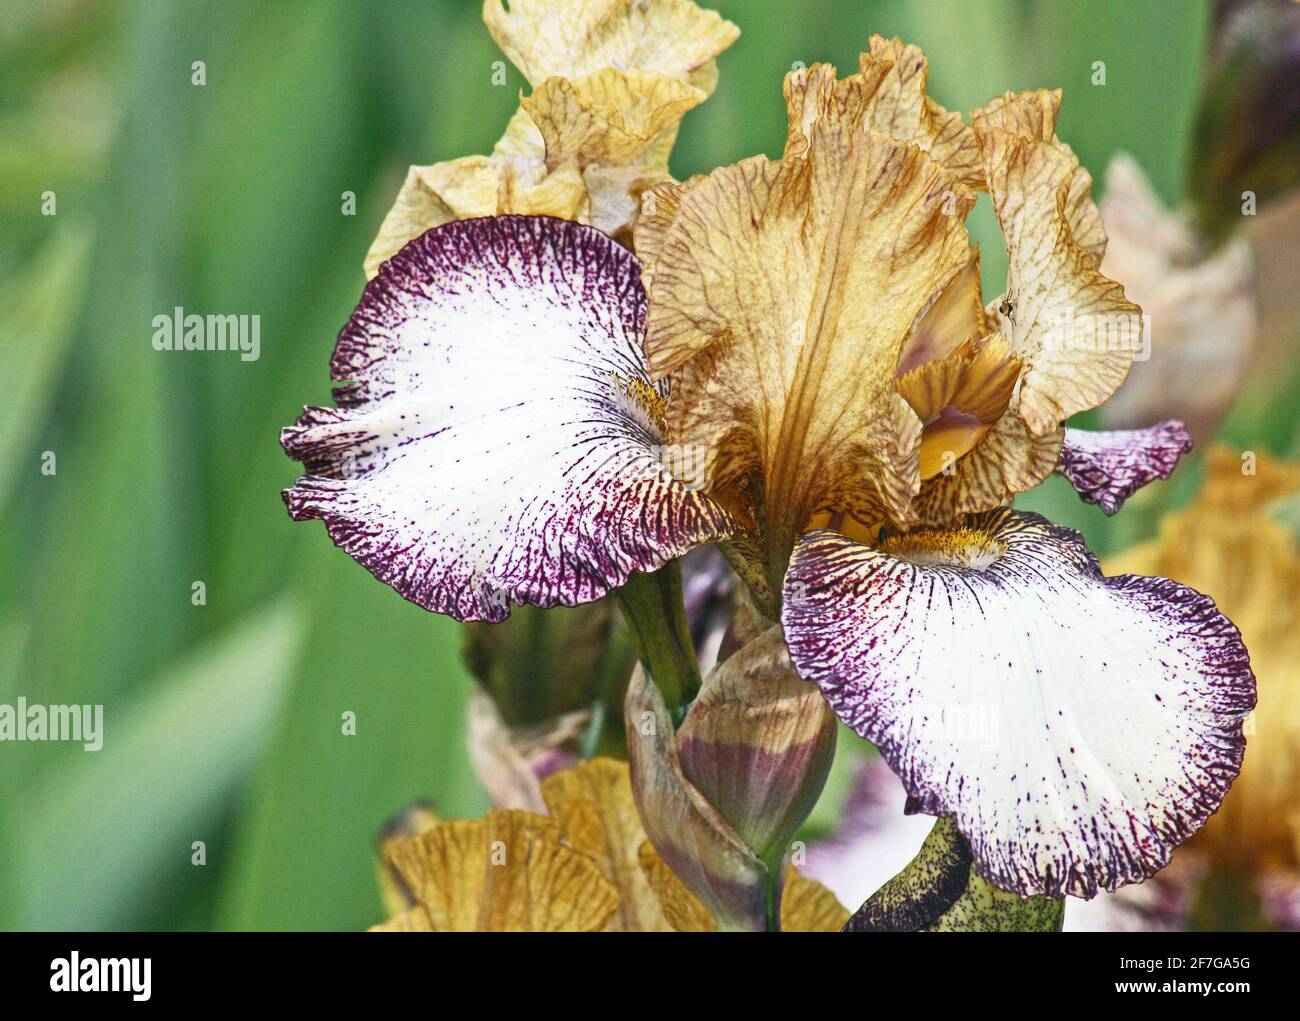 Iris in 3 colors Stock Photo